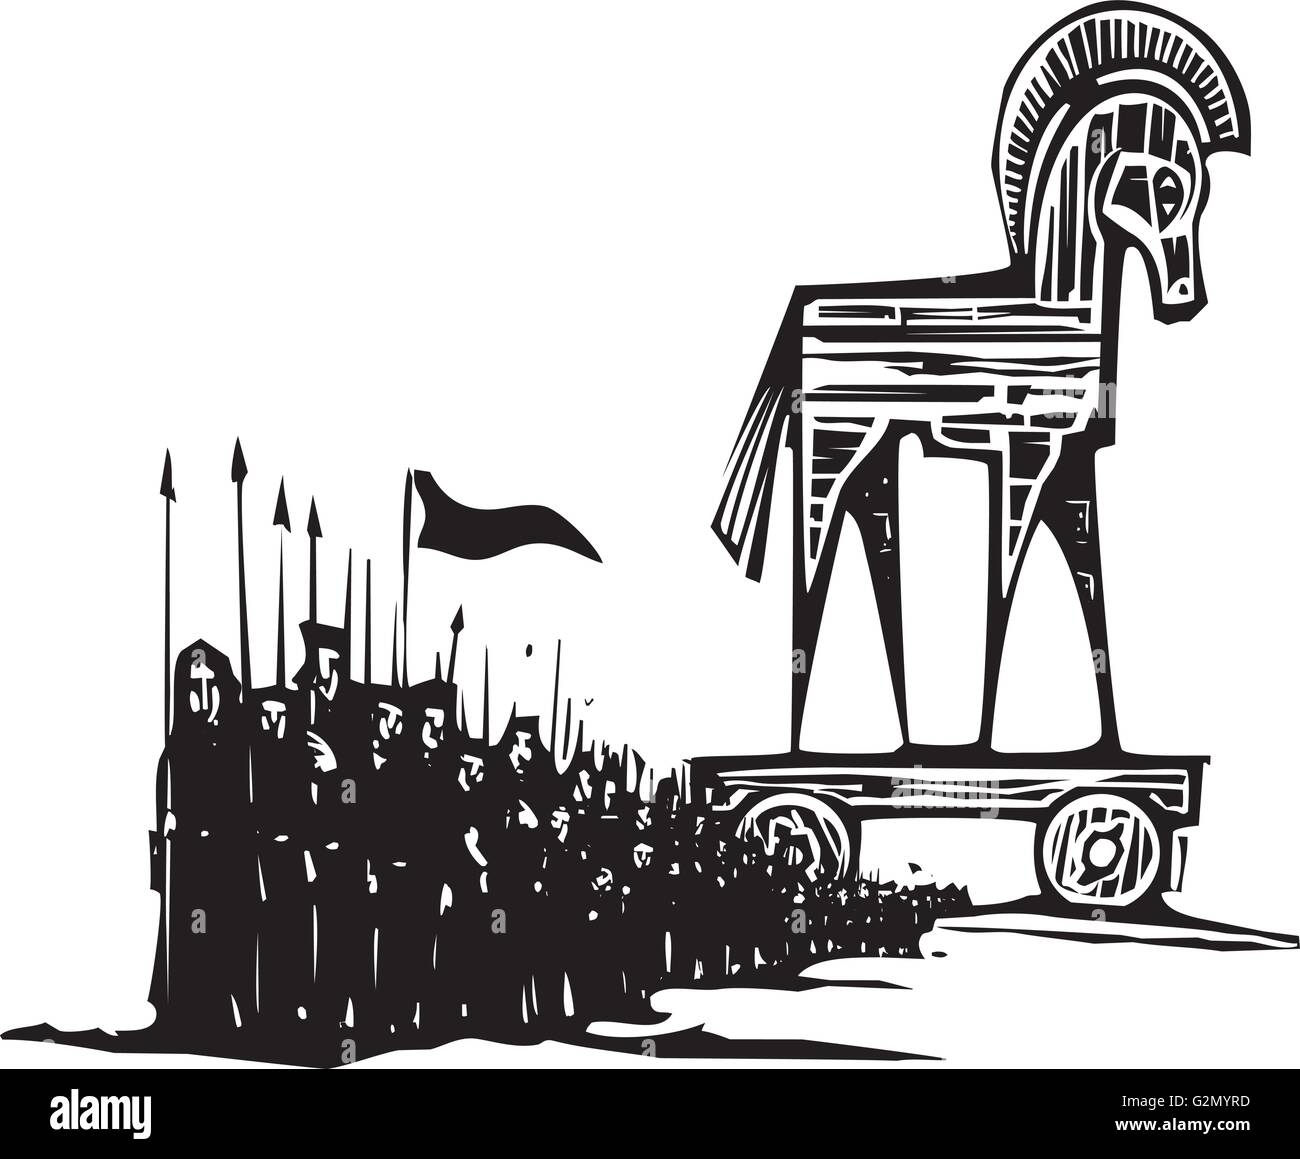 Holzschnitt Stil expressionistische Bild der griechischen Trojanisches Pferd mit einer Armee zu Fuß von ihm. Stock Vektor